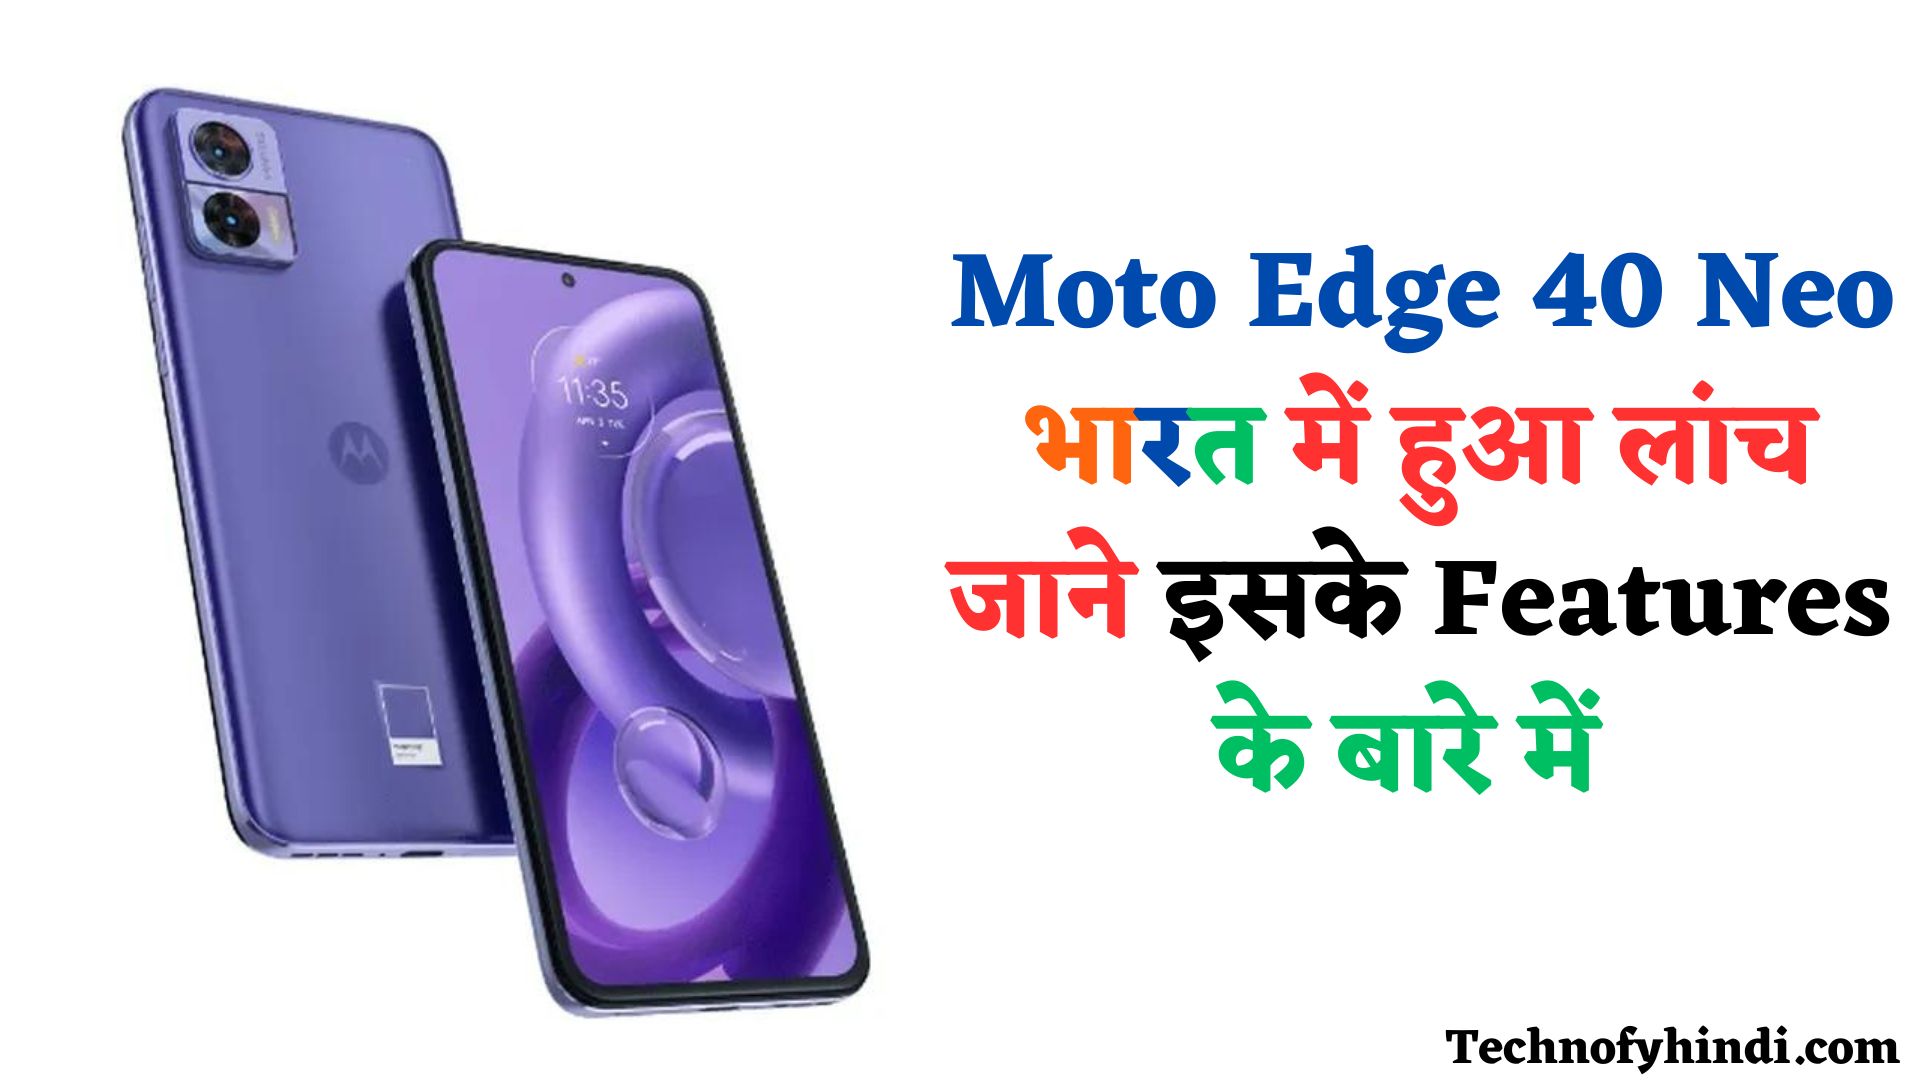 Moto Edge 40 Neo, Moto Edge 40 Neo price in india, Moto Edge 40 Neolaunch in india, Moto Edge 40 Neo 5g